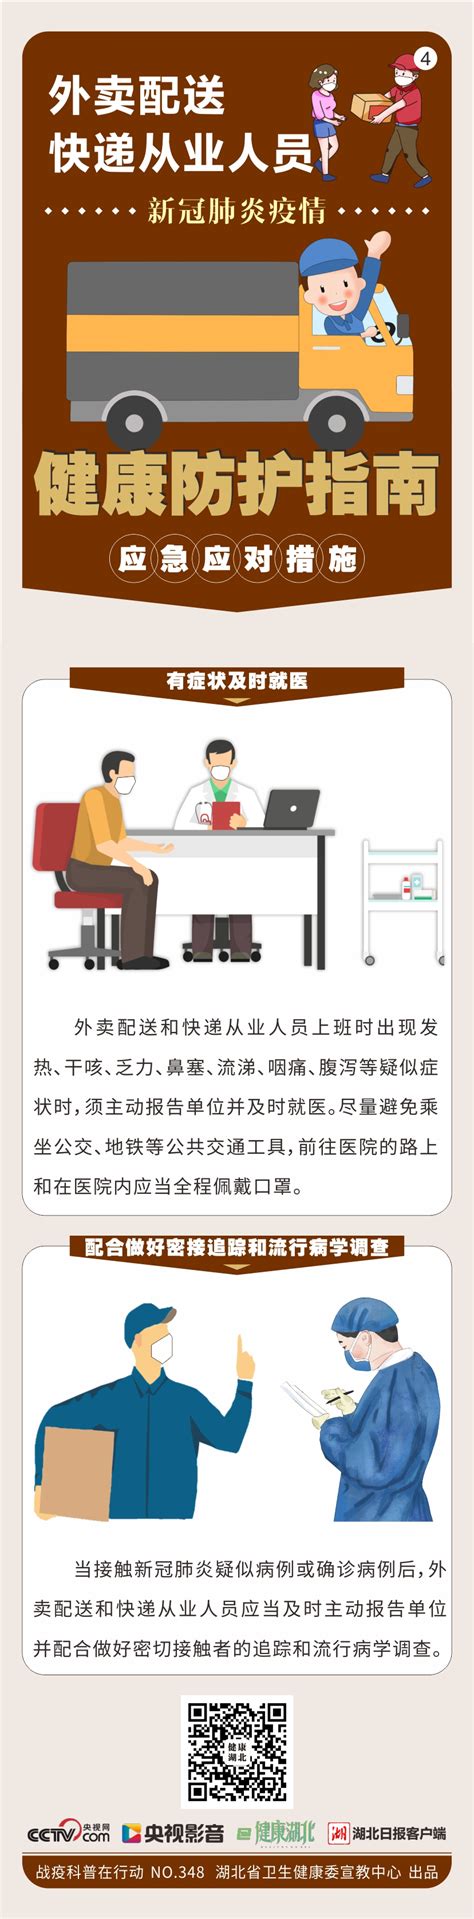 十四五”全民健康信息化规划》解读-武汉市卫生健康信息中心